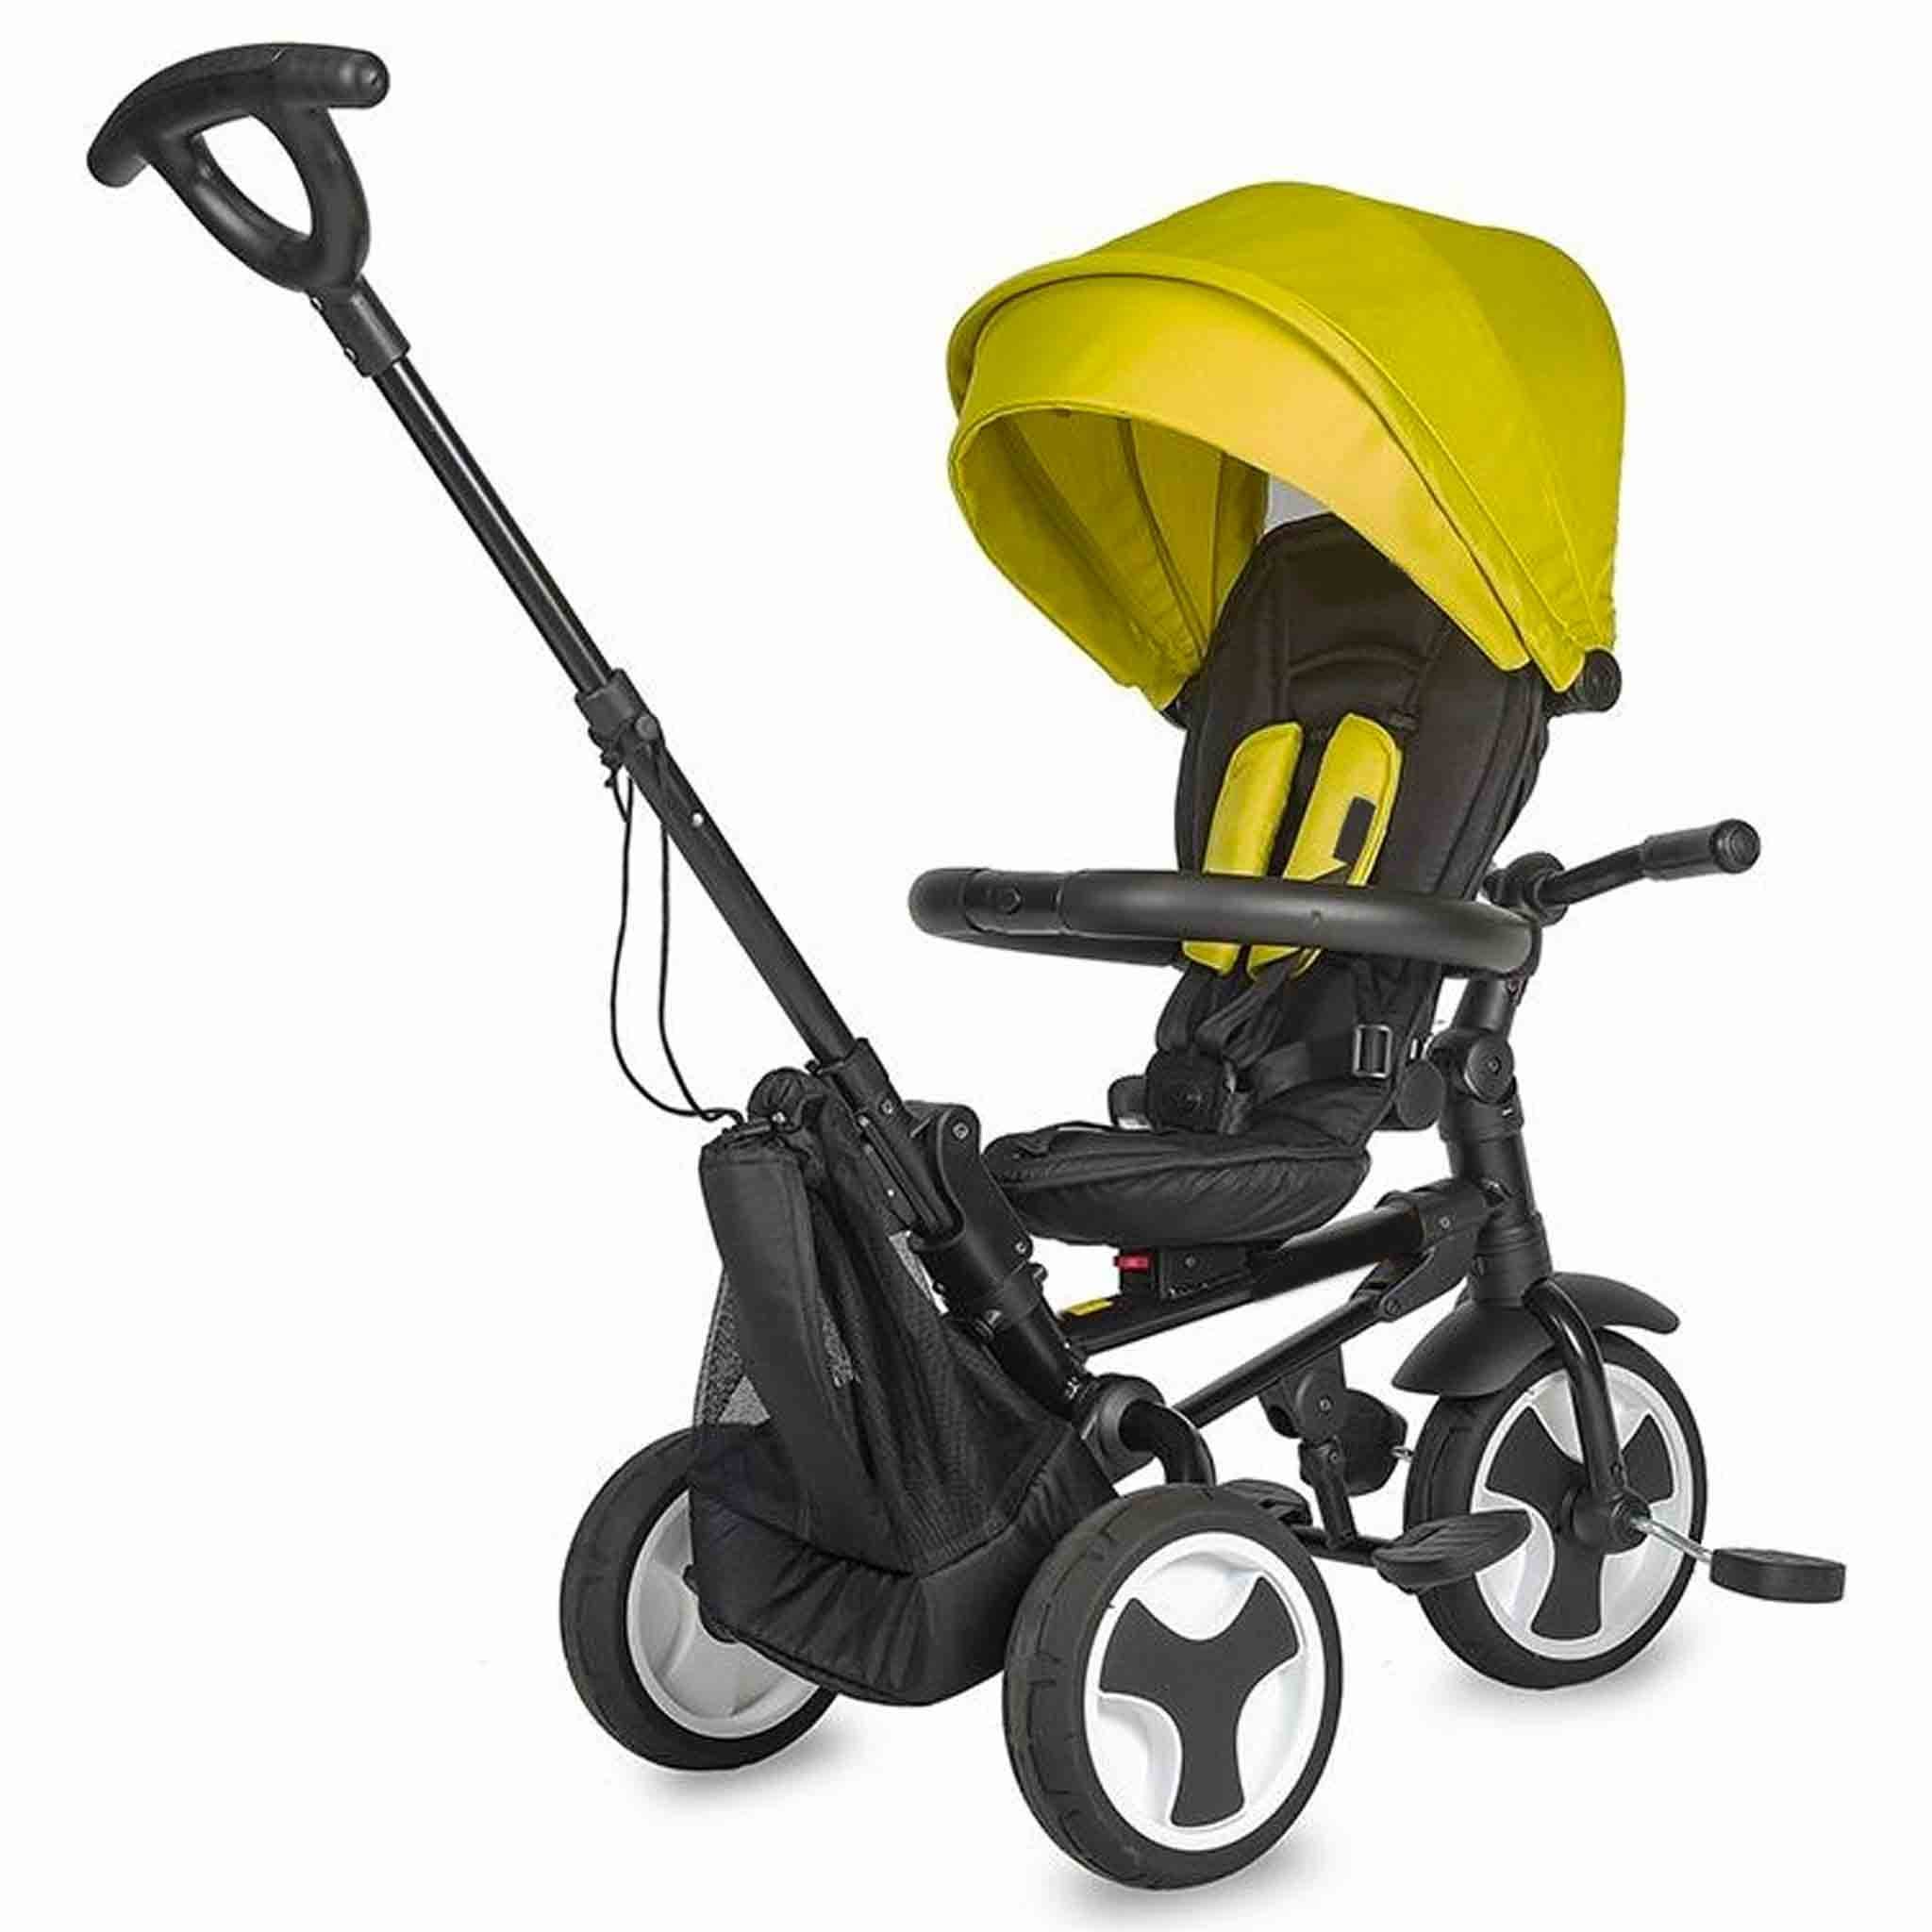 triciclo-spettro-coccolle-spectra-pieghevole-6-in-1-reclinabile-girevole-fronte-strada-mamma-bambino-ruote-giallo-retro.jpg